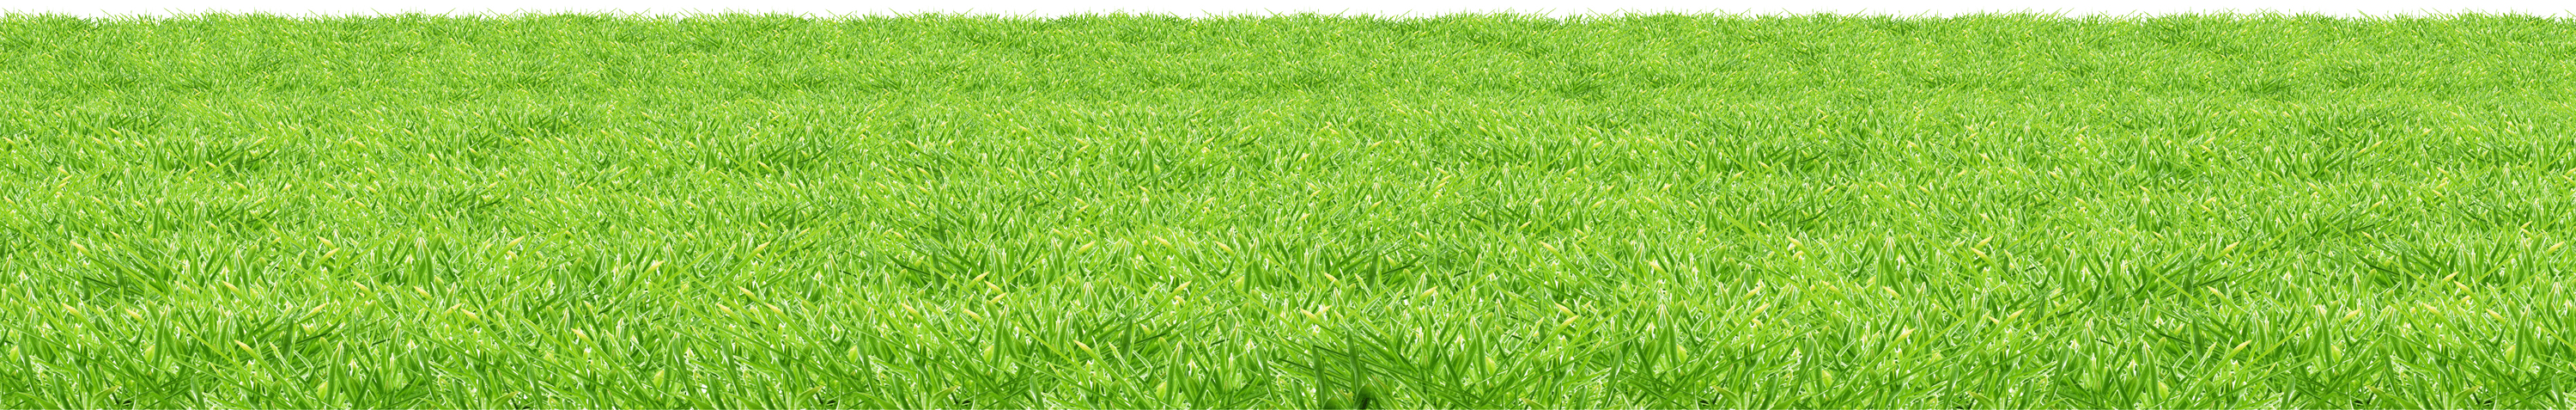 Искусственный коврик для пола травы